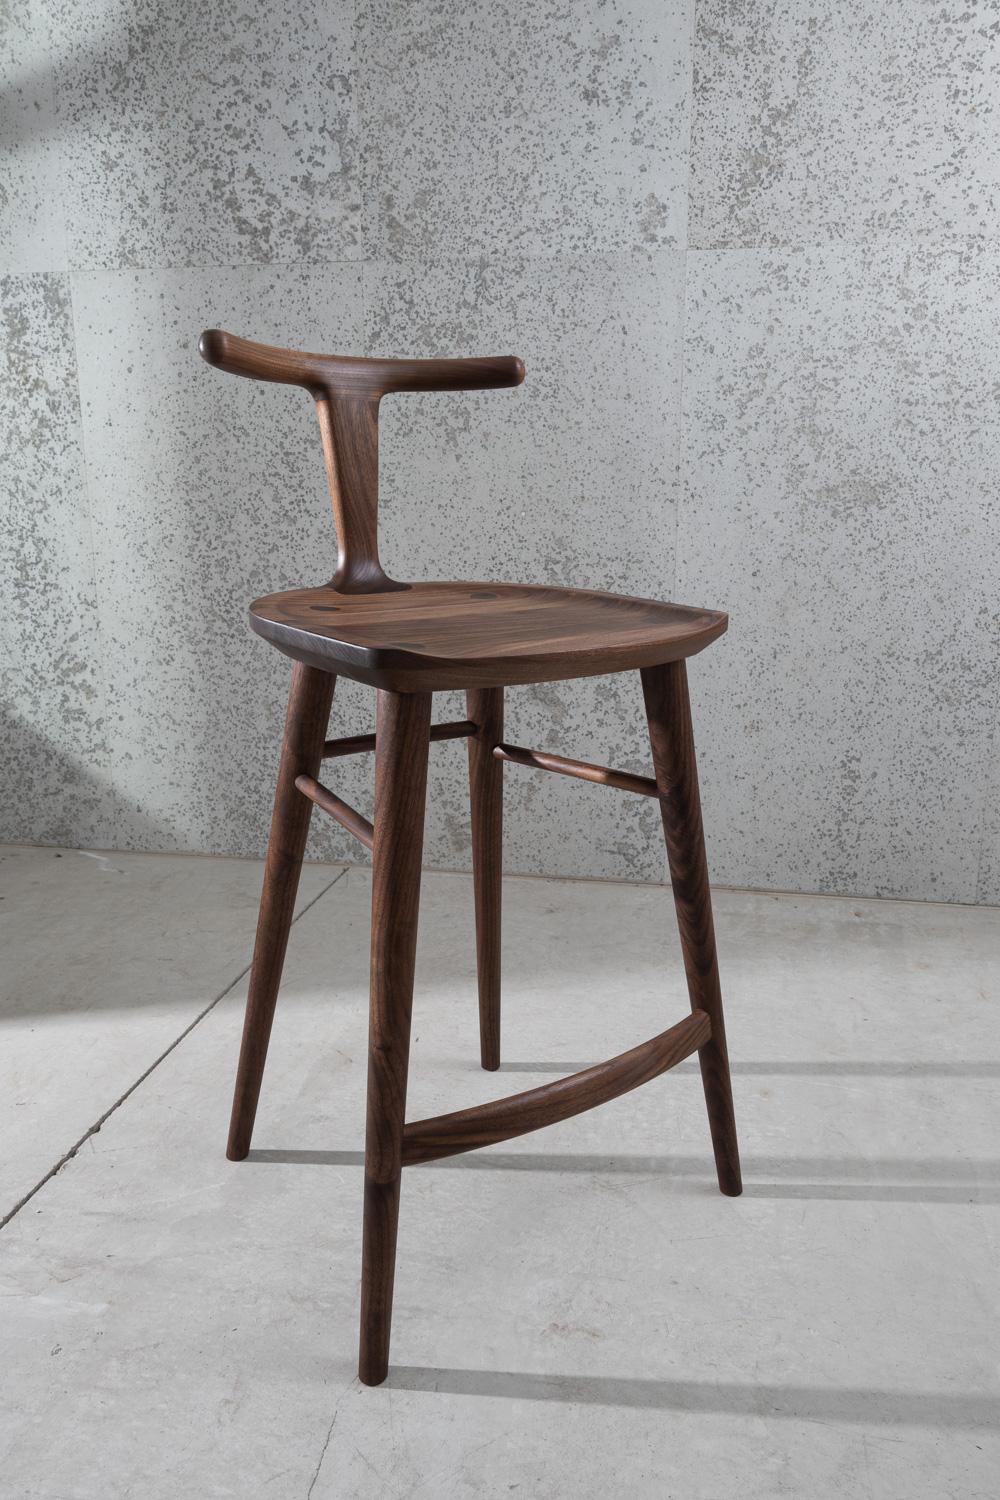 Dieser Barhocker, den Justin Nelson für Fernweh Woodworking entworfen hat, ist aus dem Oxbend-Esszimmerstuhl hervorgegangen. Die Oxbend-Kollektion entstand aus dem Wunsch, bequeme, organische und in ihrer Schlichtheit elegante Sitzmöbel zu schaffen.